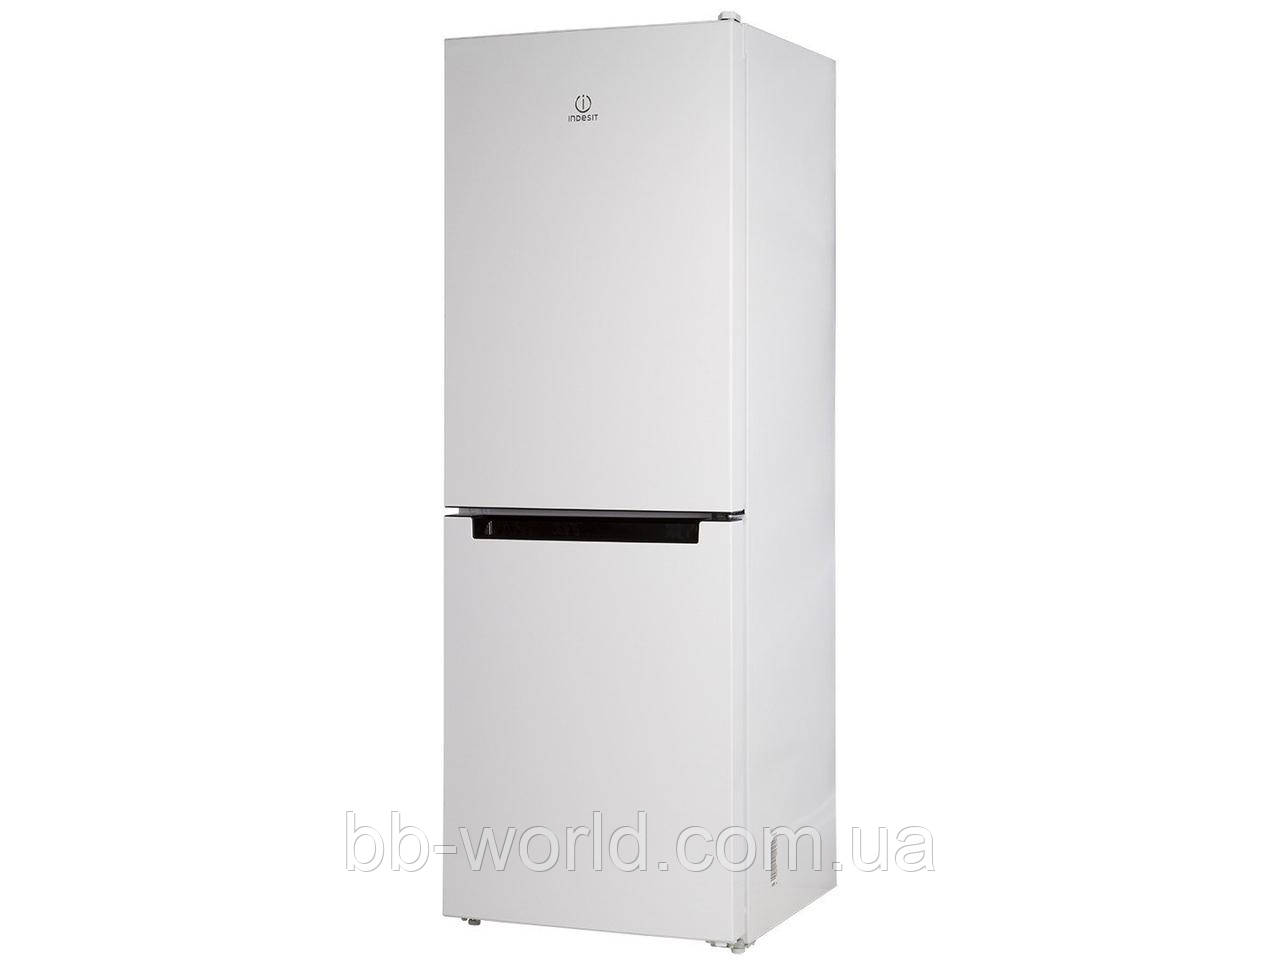 Холодильники индезит отзывы специалистов и покупателей. Холодильник Индезит ds316w. Холодильник Индезит ДС 316 W.